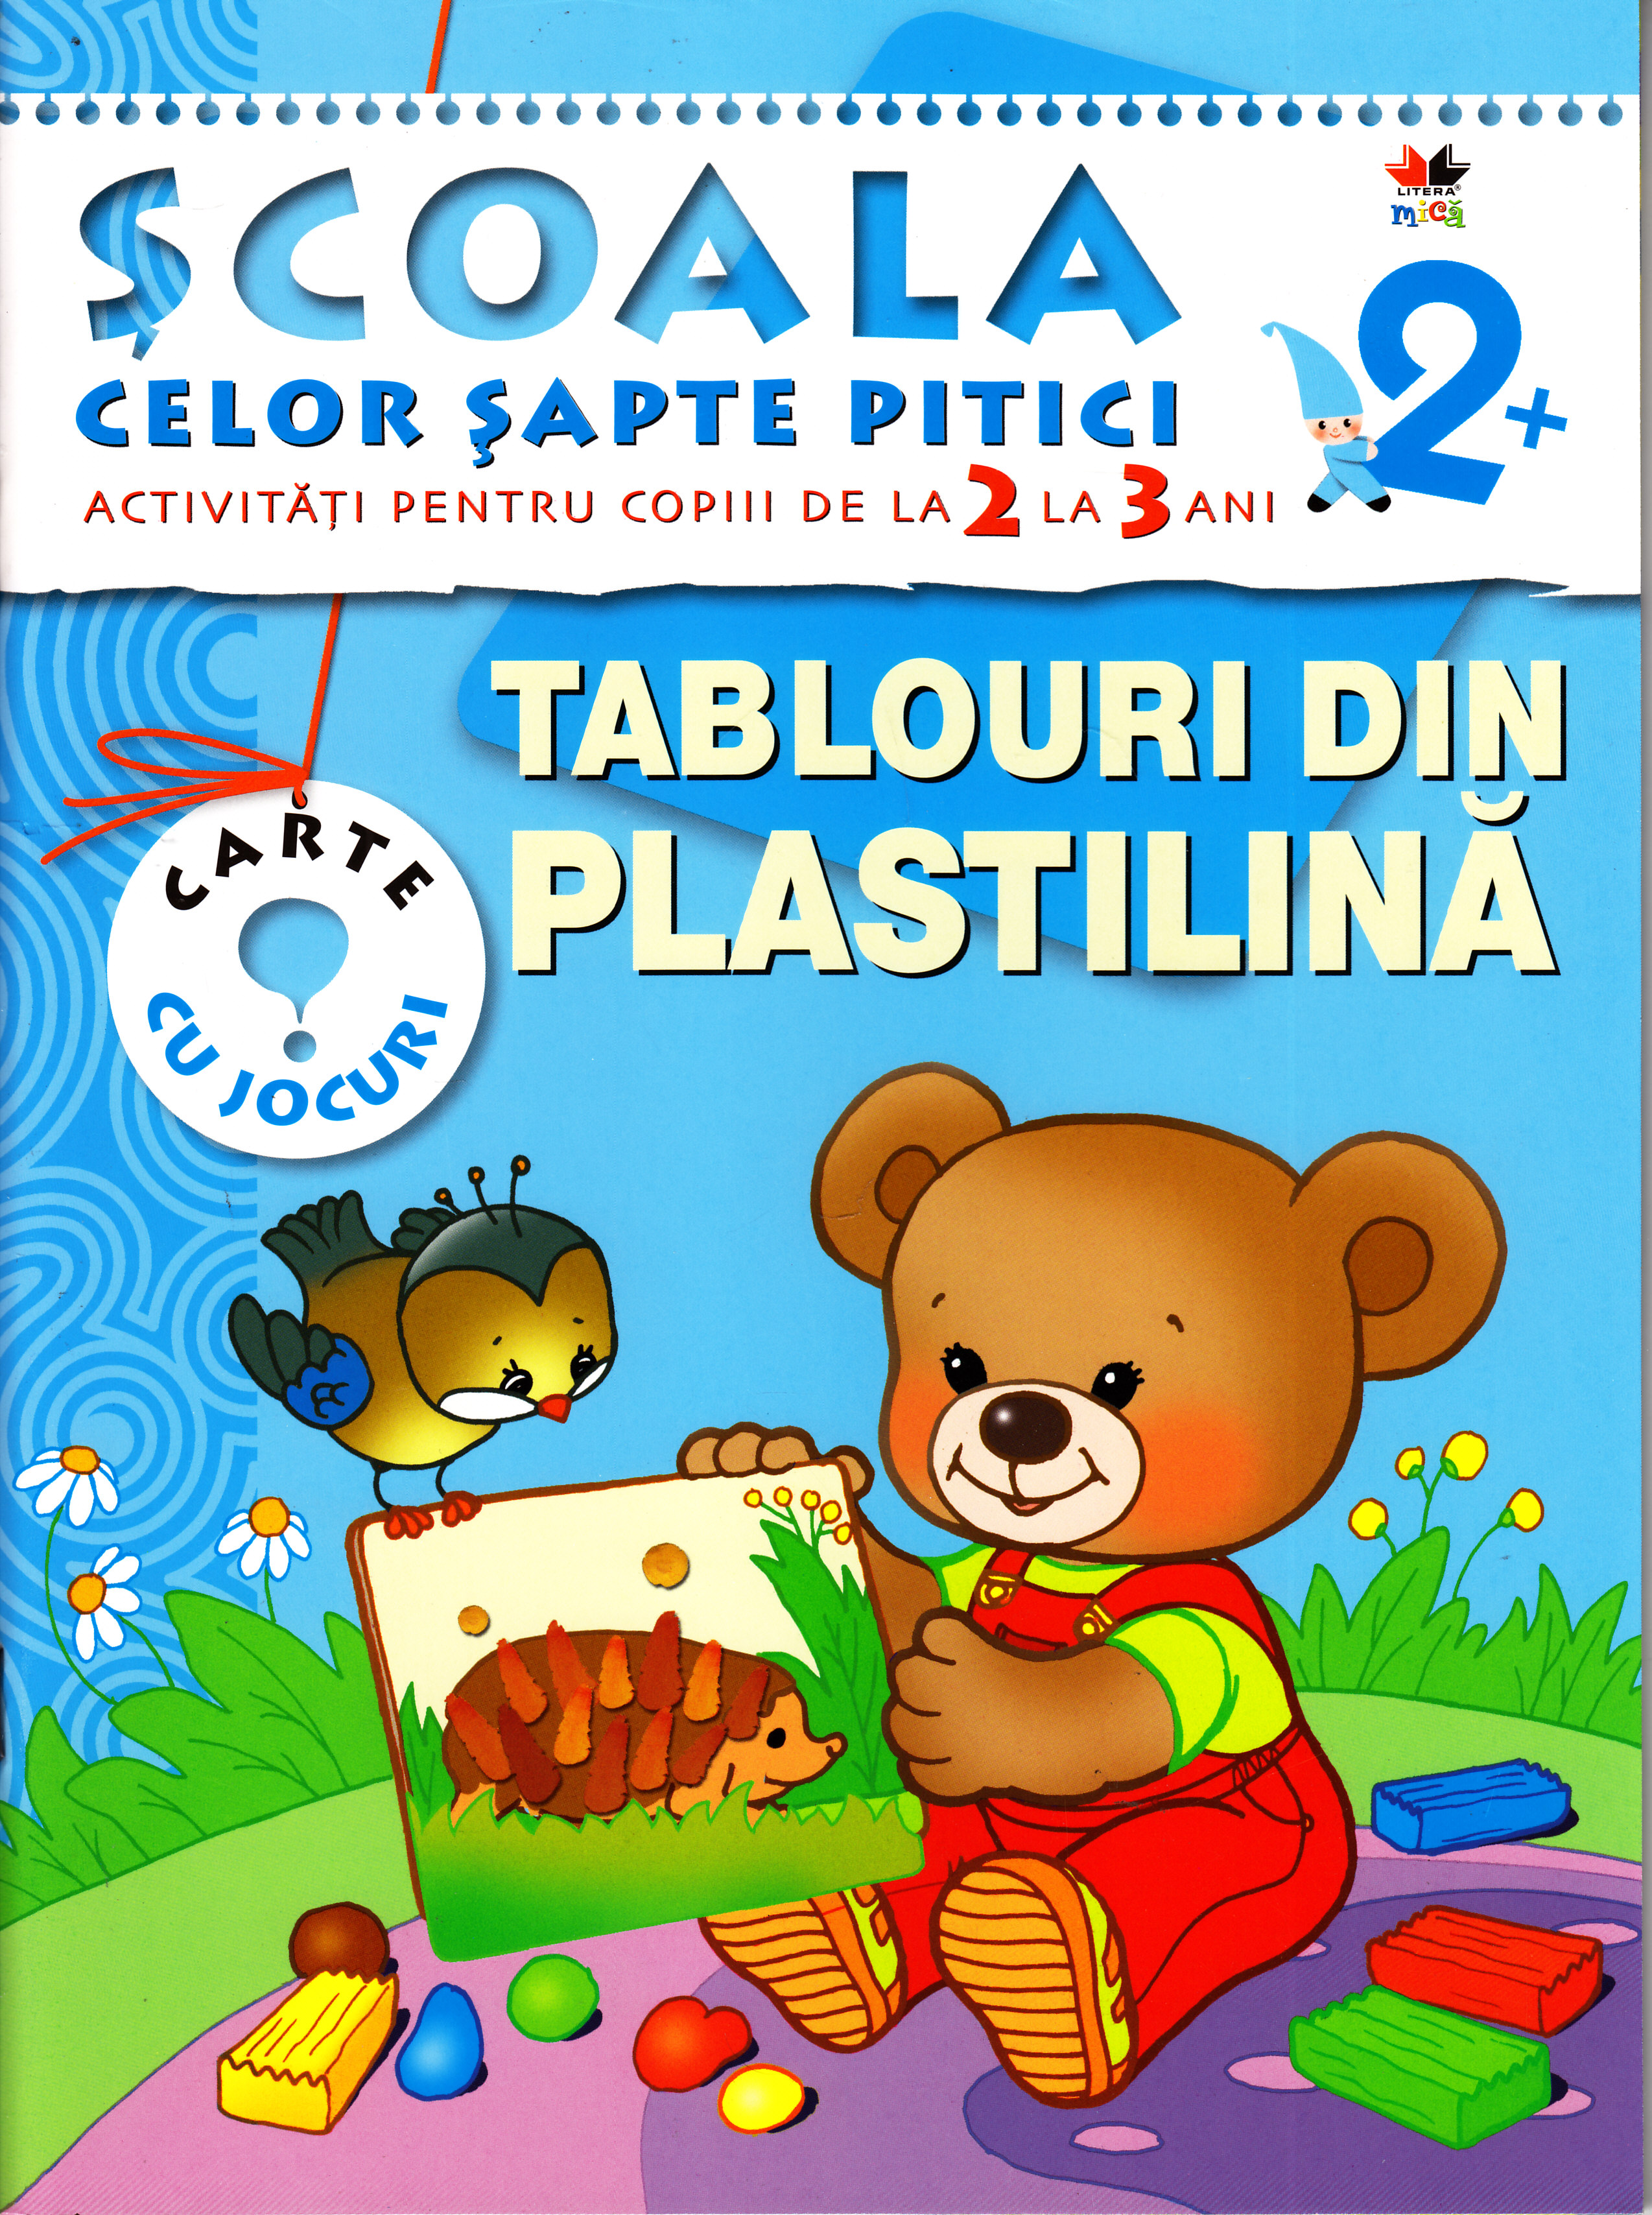 2+ Tablouri din plastilina - Activitati pentru copiii de la 2 la 3 ani